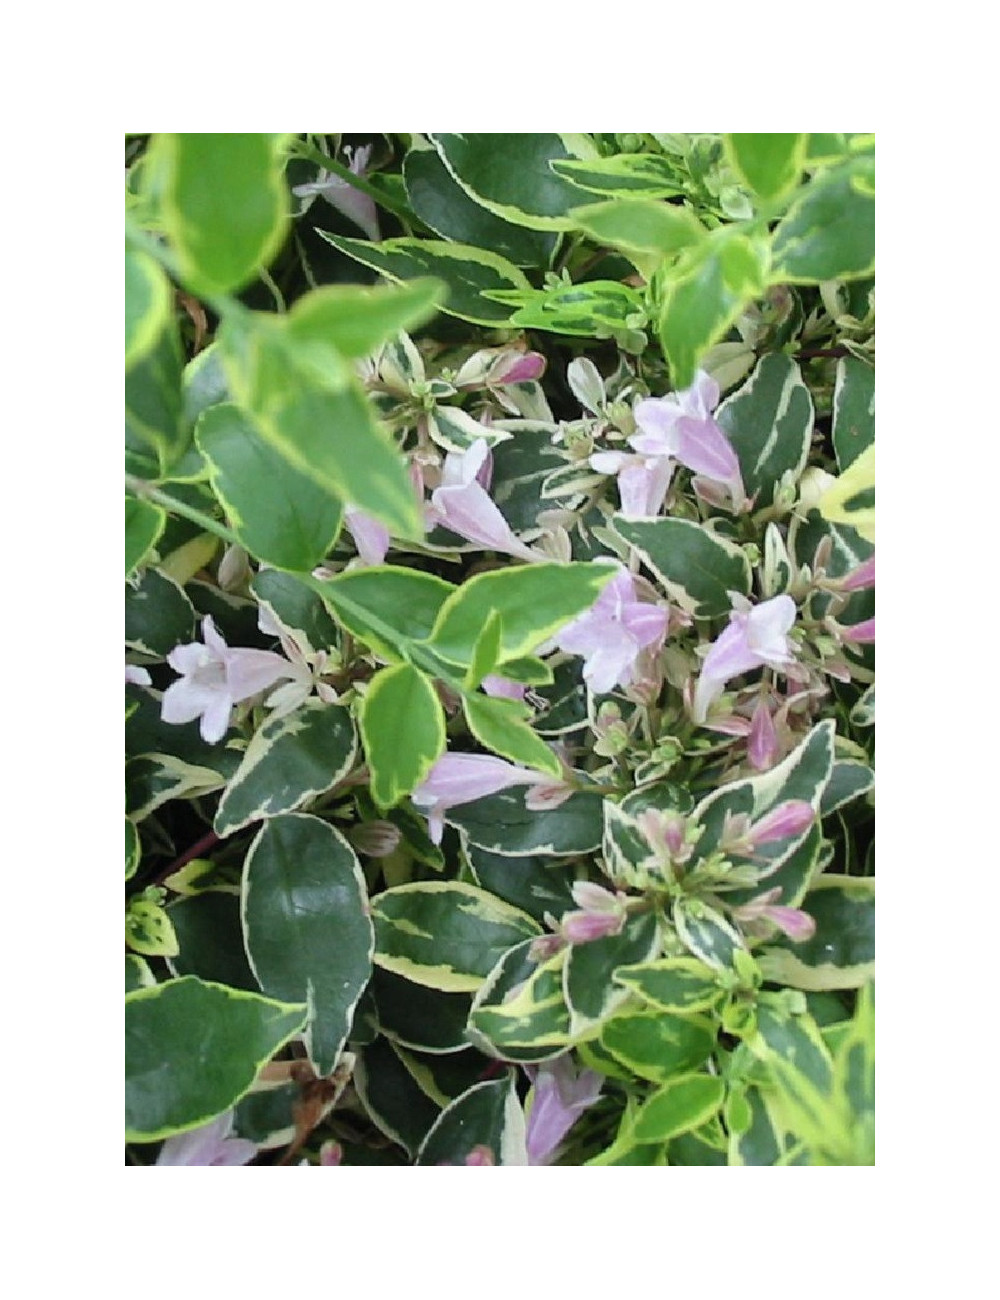 ABELIA grandiflora HOPLEYS VARIEGATA® (Abélia à grandes fleurs Hopleys variegata)